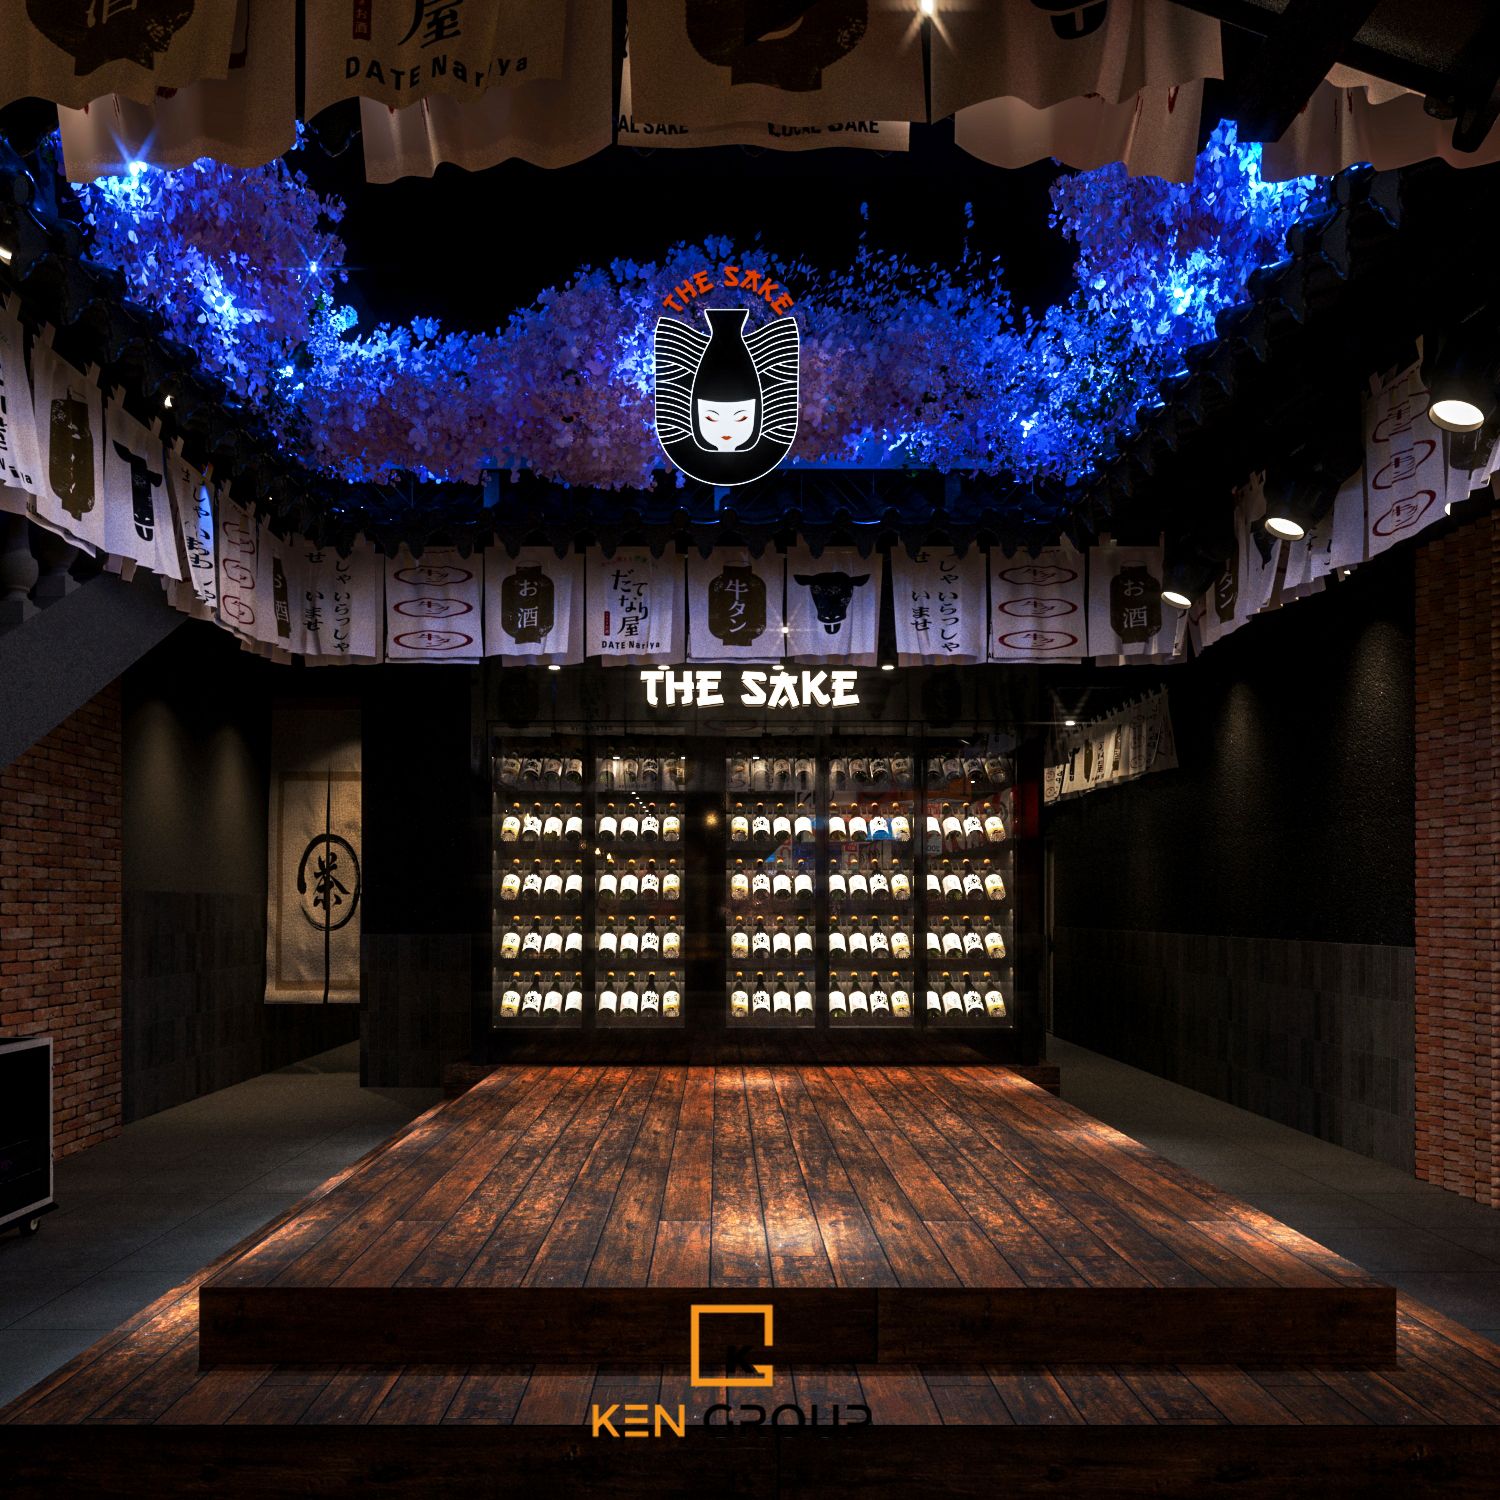 thiet ke nha hang the sake 19 1 - Thiết kế nhà hàng The Sake - Khám phá Nhật Bản thu nhỏ giữa lòng Sài Gòn